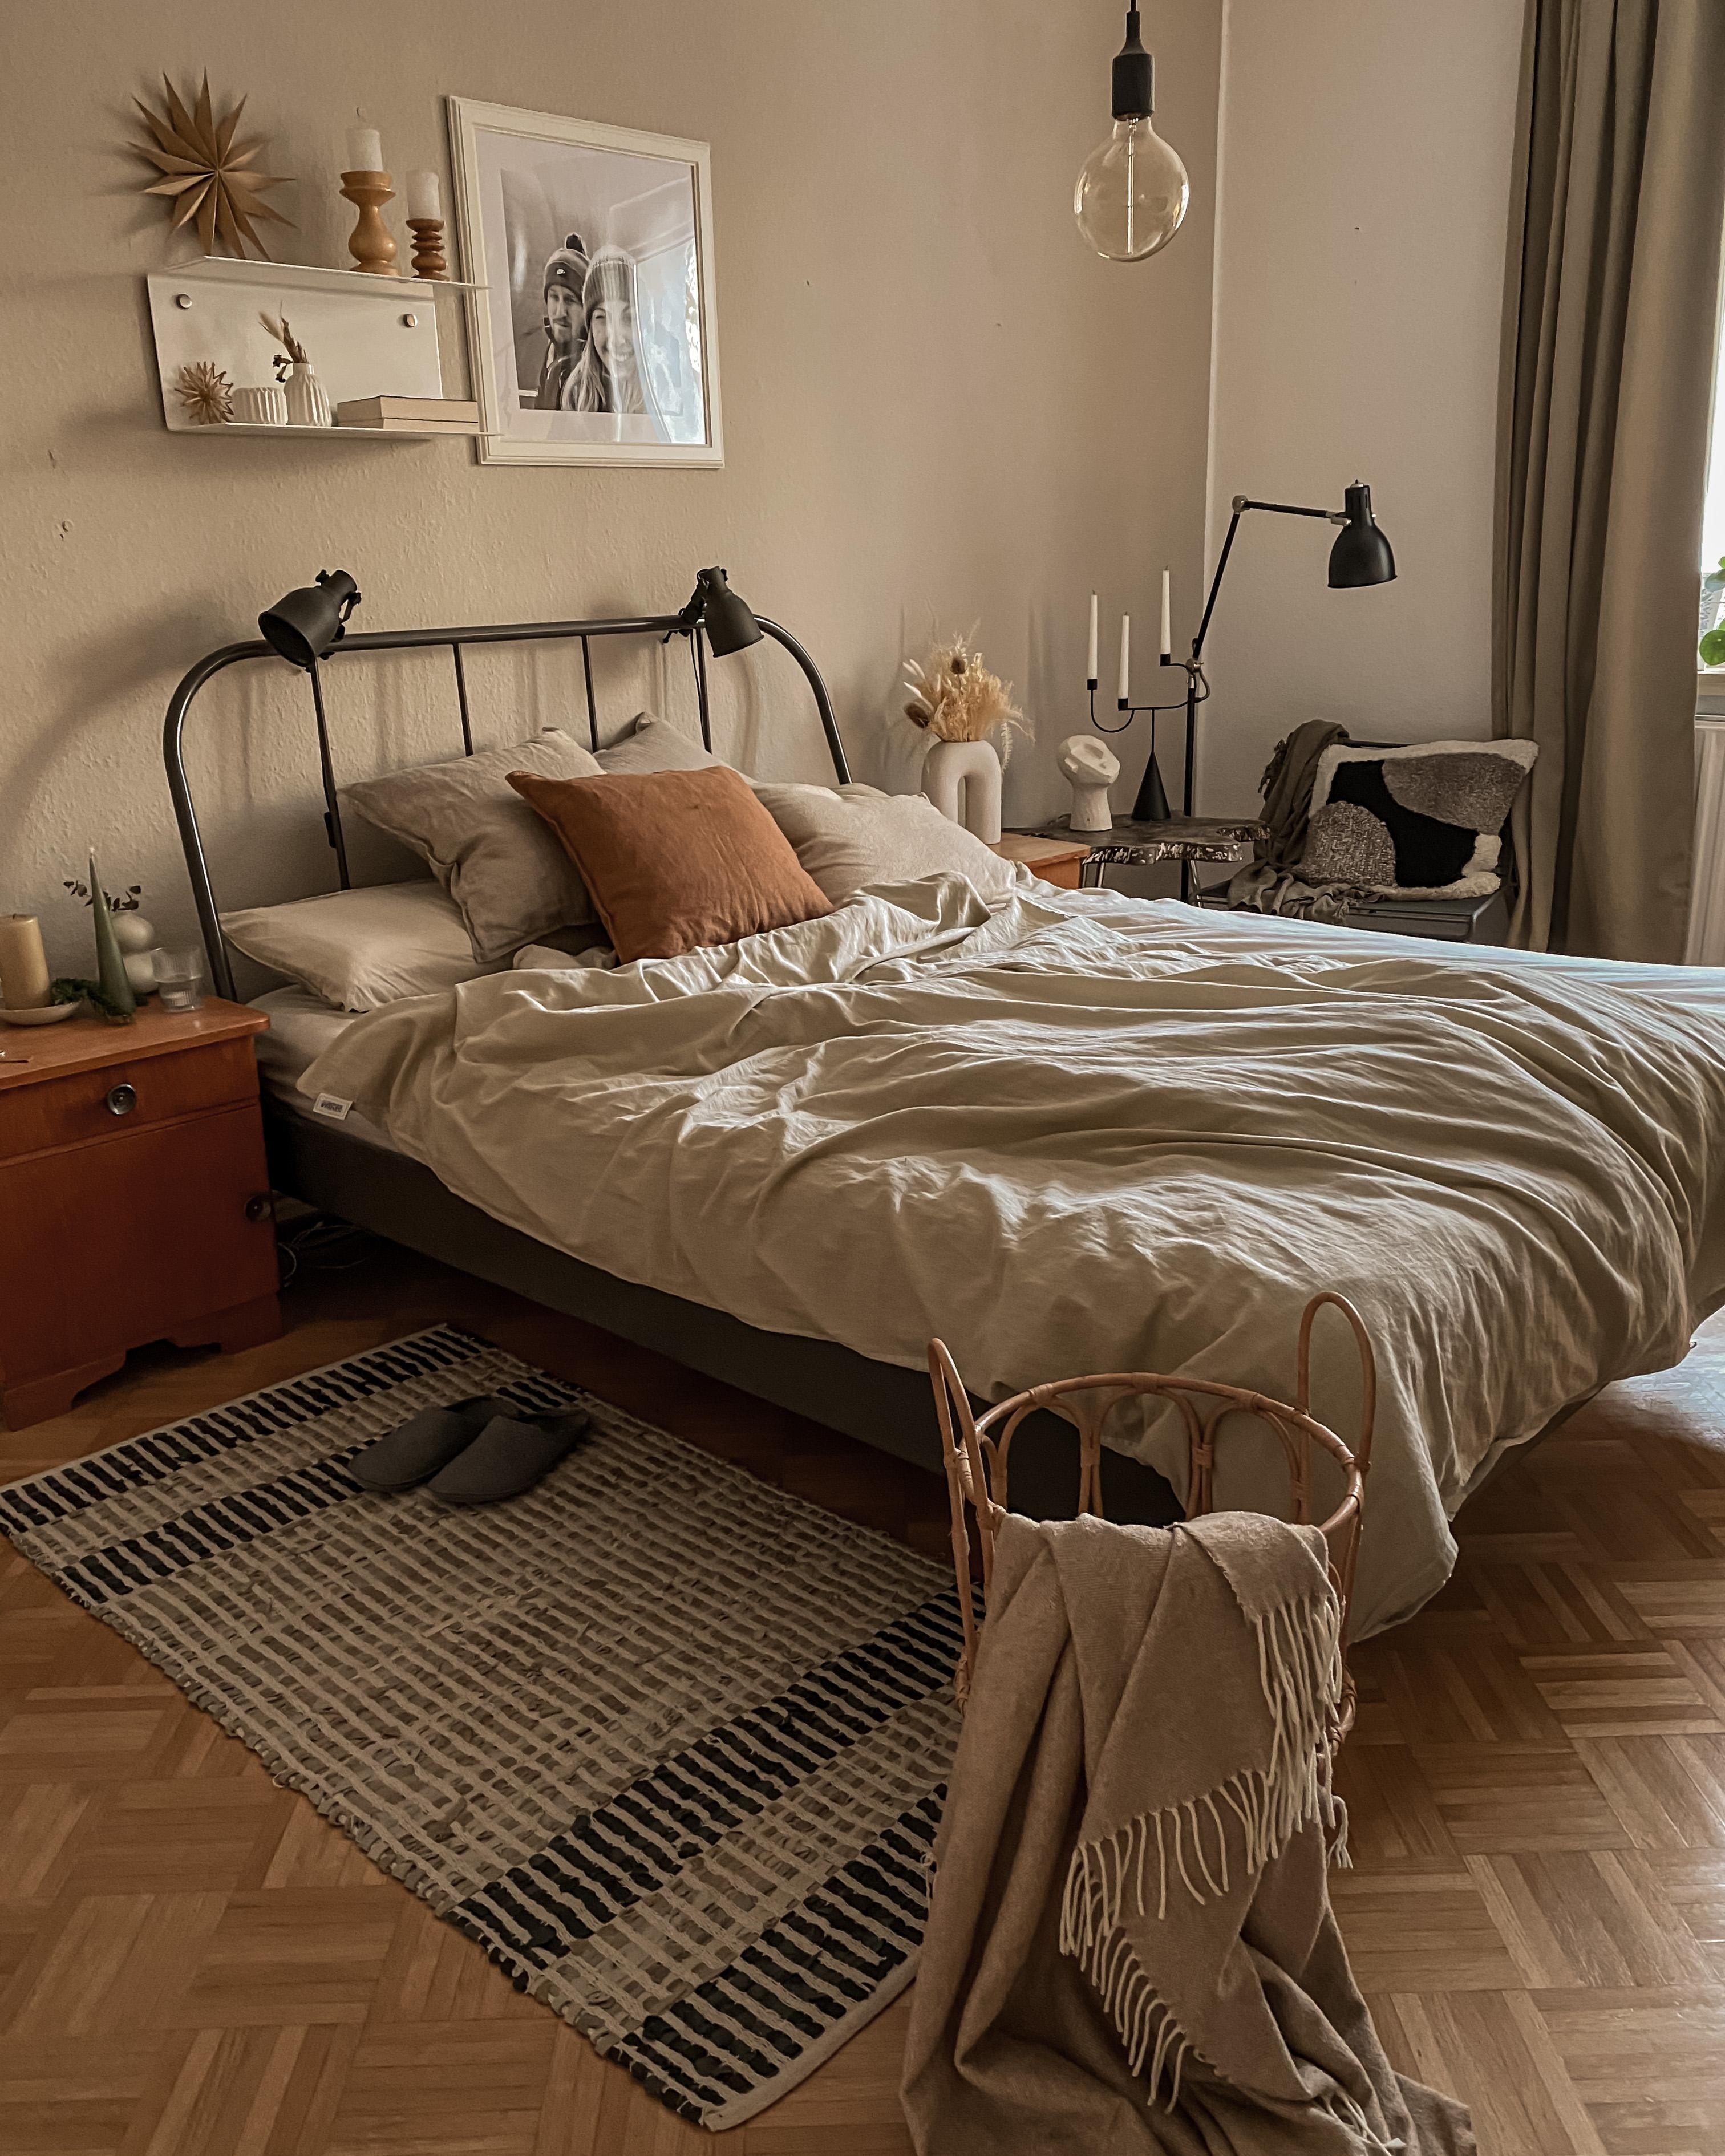 Mal wieder ein kleiner Einblick in unser Schlafzimmer💛 #bedroom #schlafzimmer #beige #altbauliebe #bettwäsche #natural